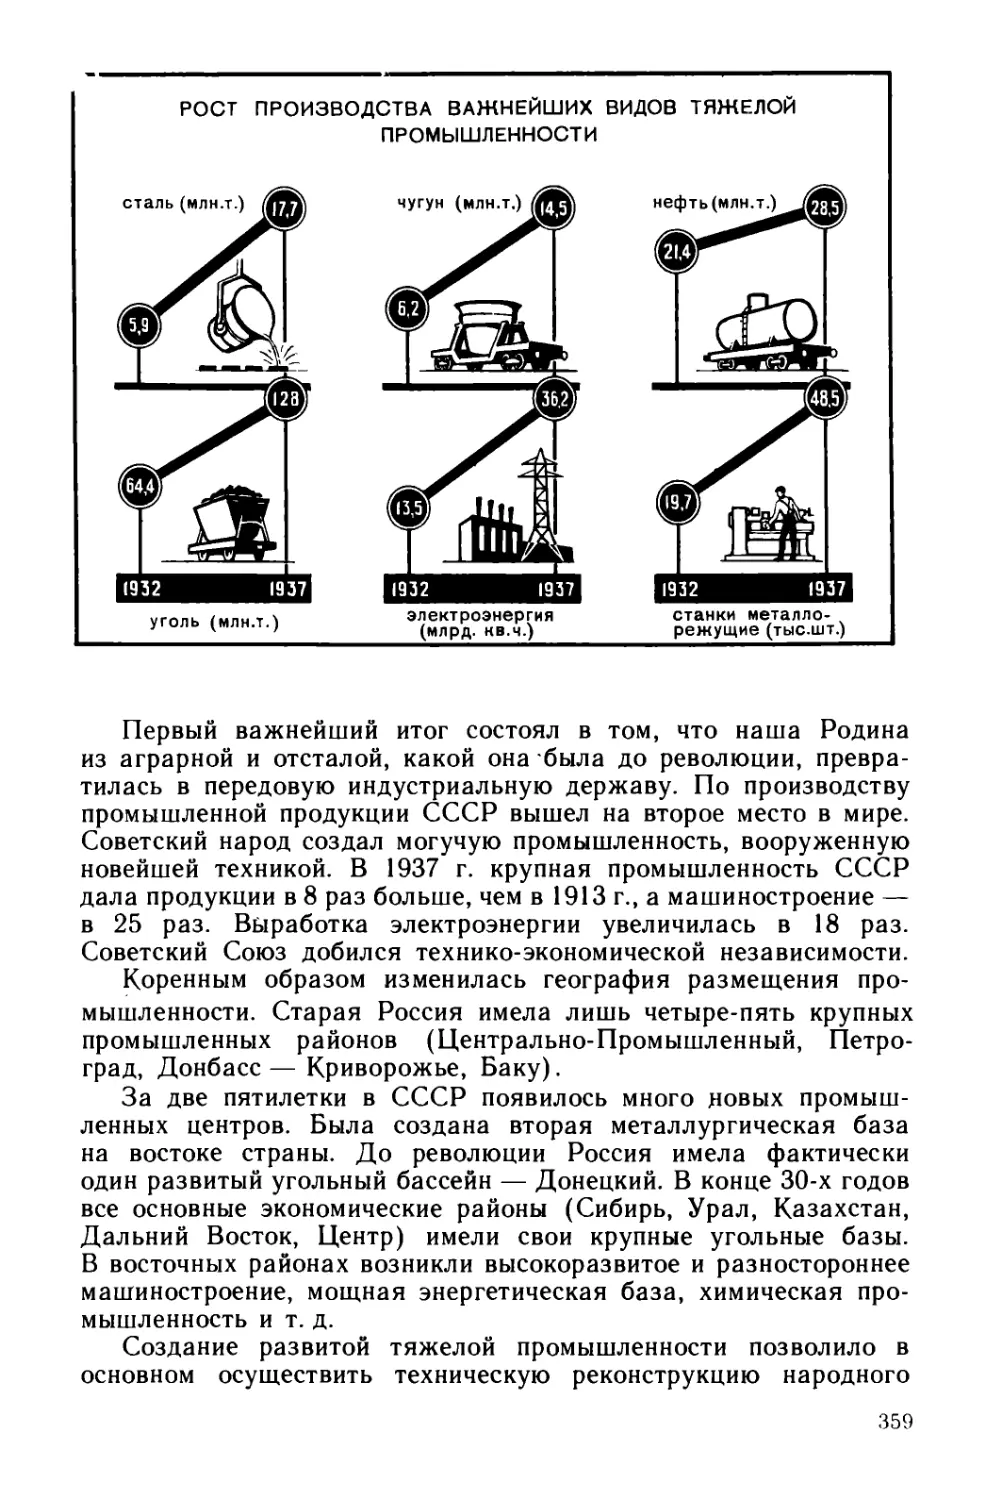 § 67. Социализм в СССР в основном построен